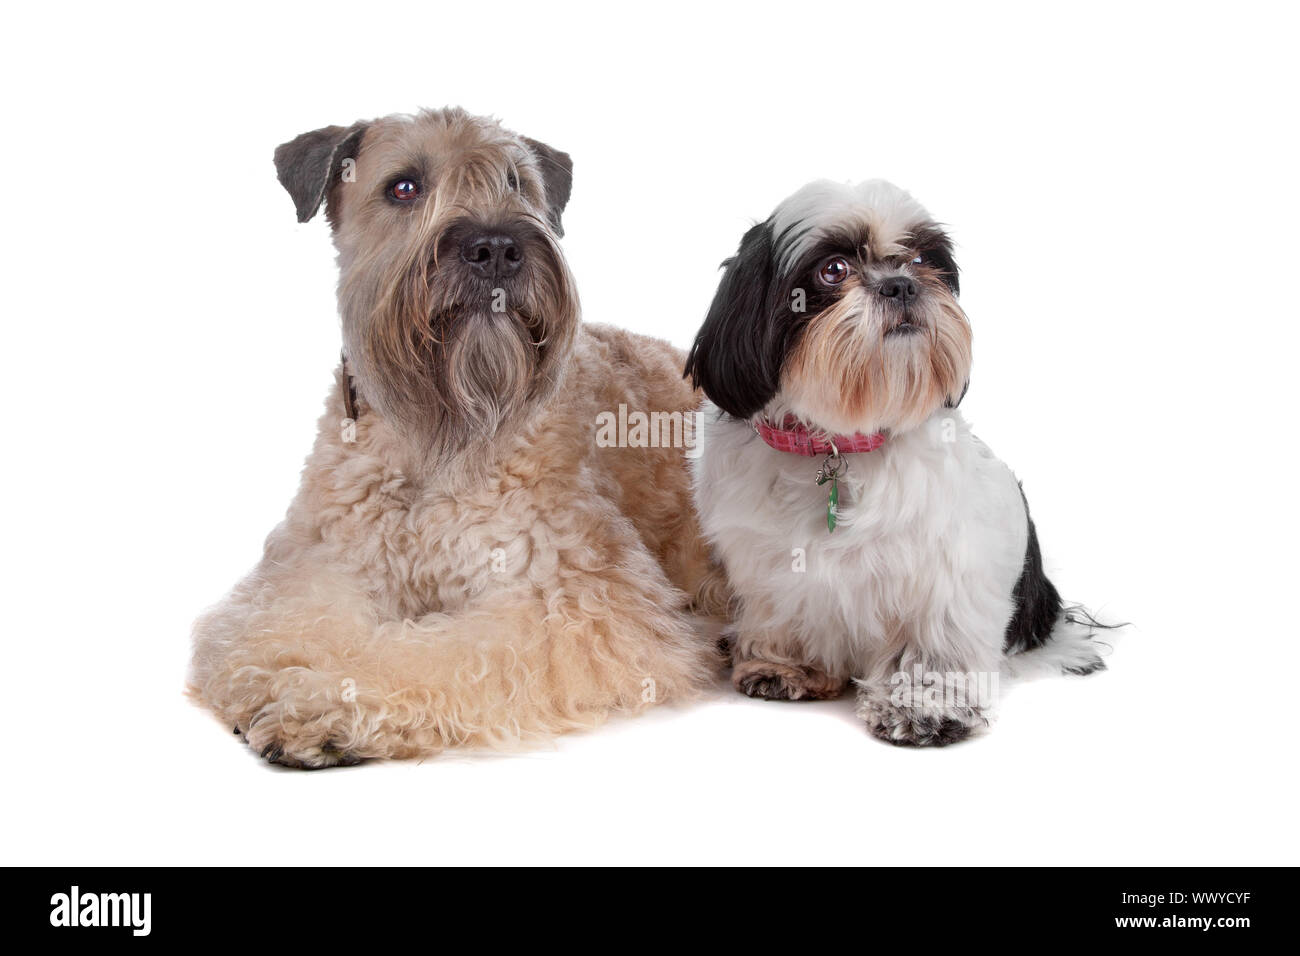 Wheaten Terrier et Shih Tzu chien couché, isolé sur fond blanc Banque D'Images